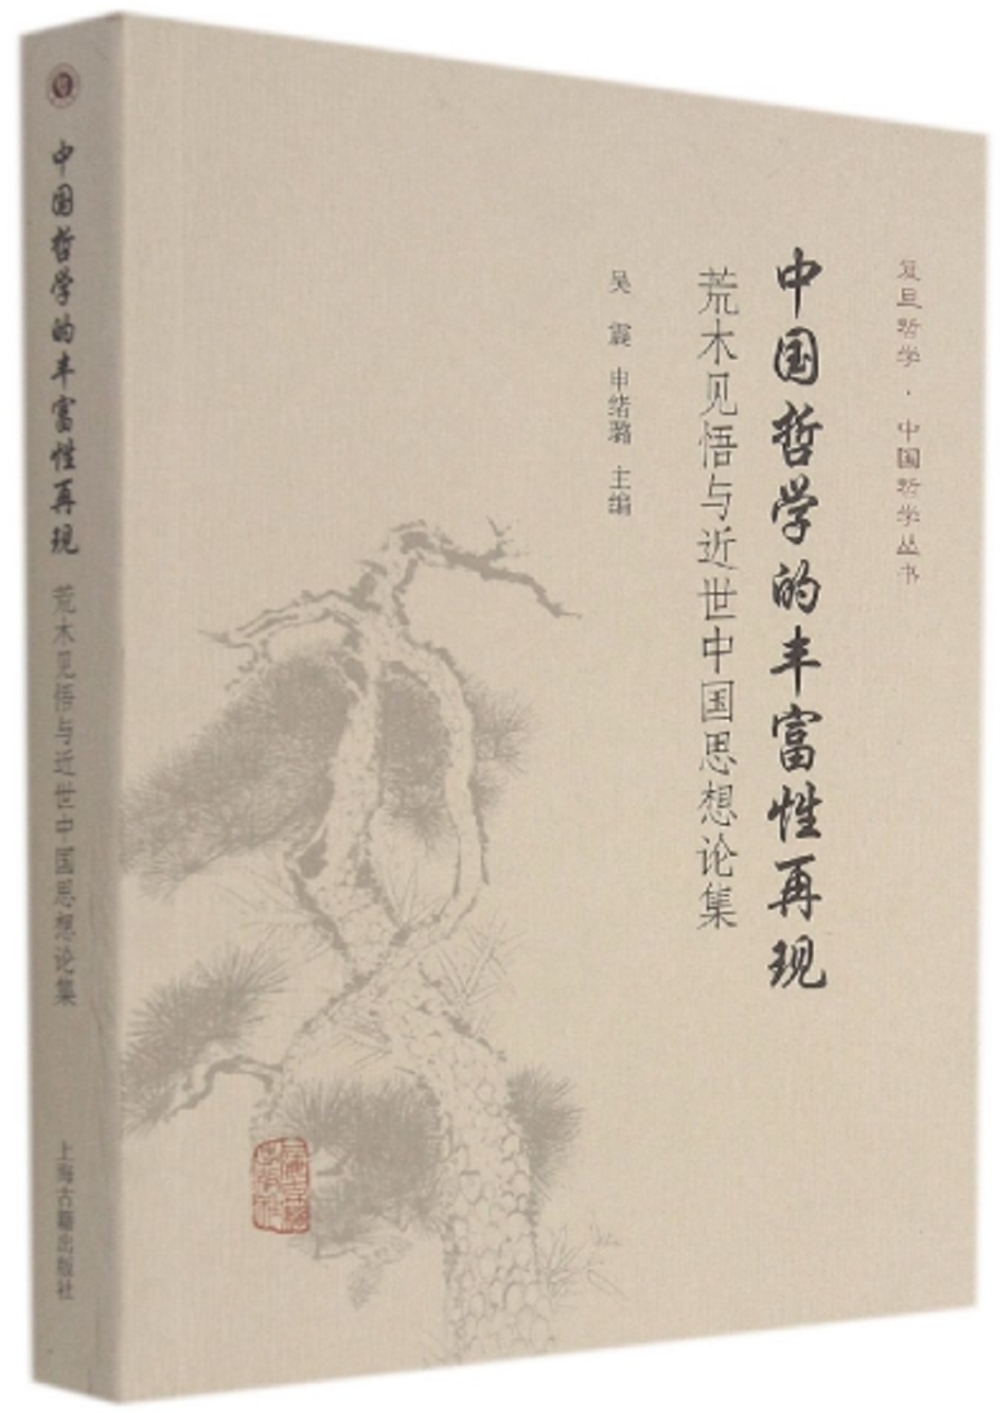 中國哲學的豐富性再現：荒木見悟與近世中國思想論集